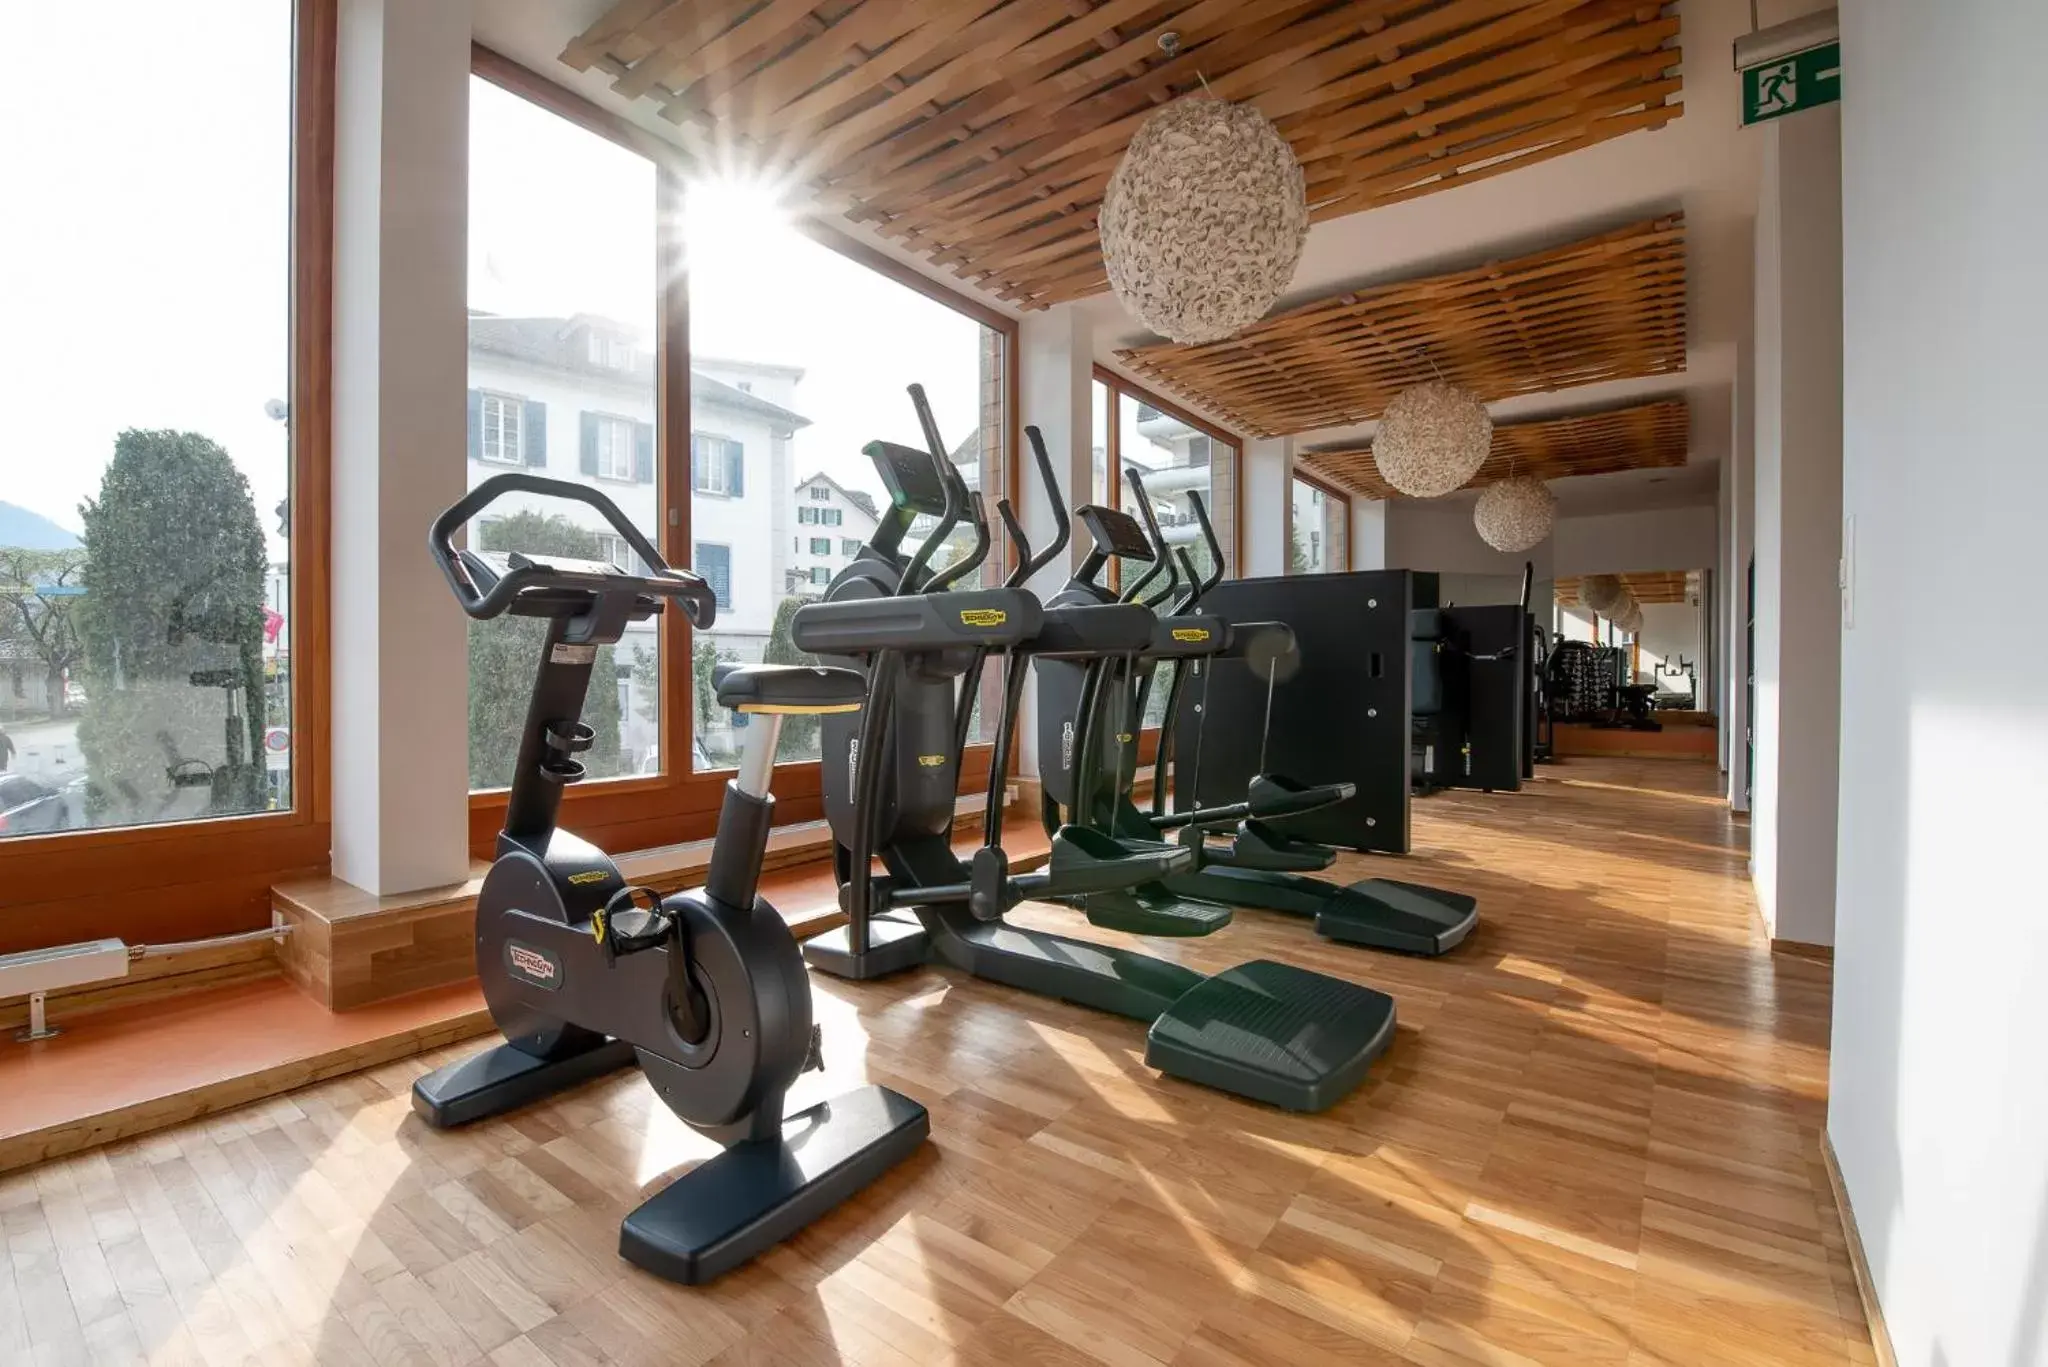 Fitness centre/facilities, Fitness Center/Facilities in Hotel Rössli Gourmet & Spa